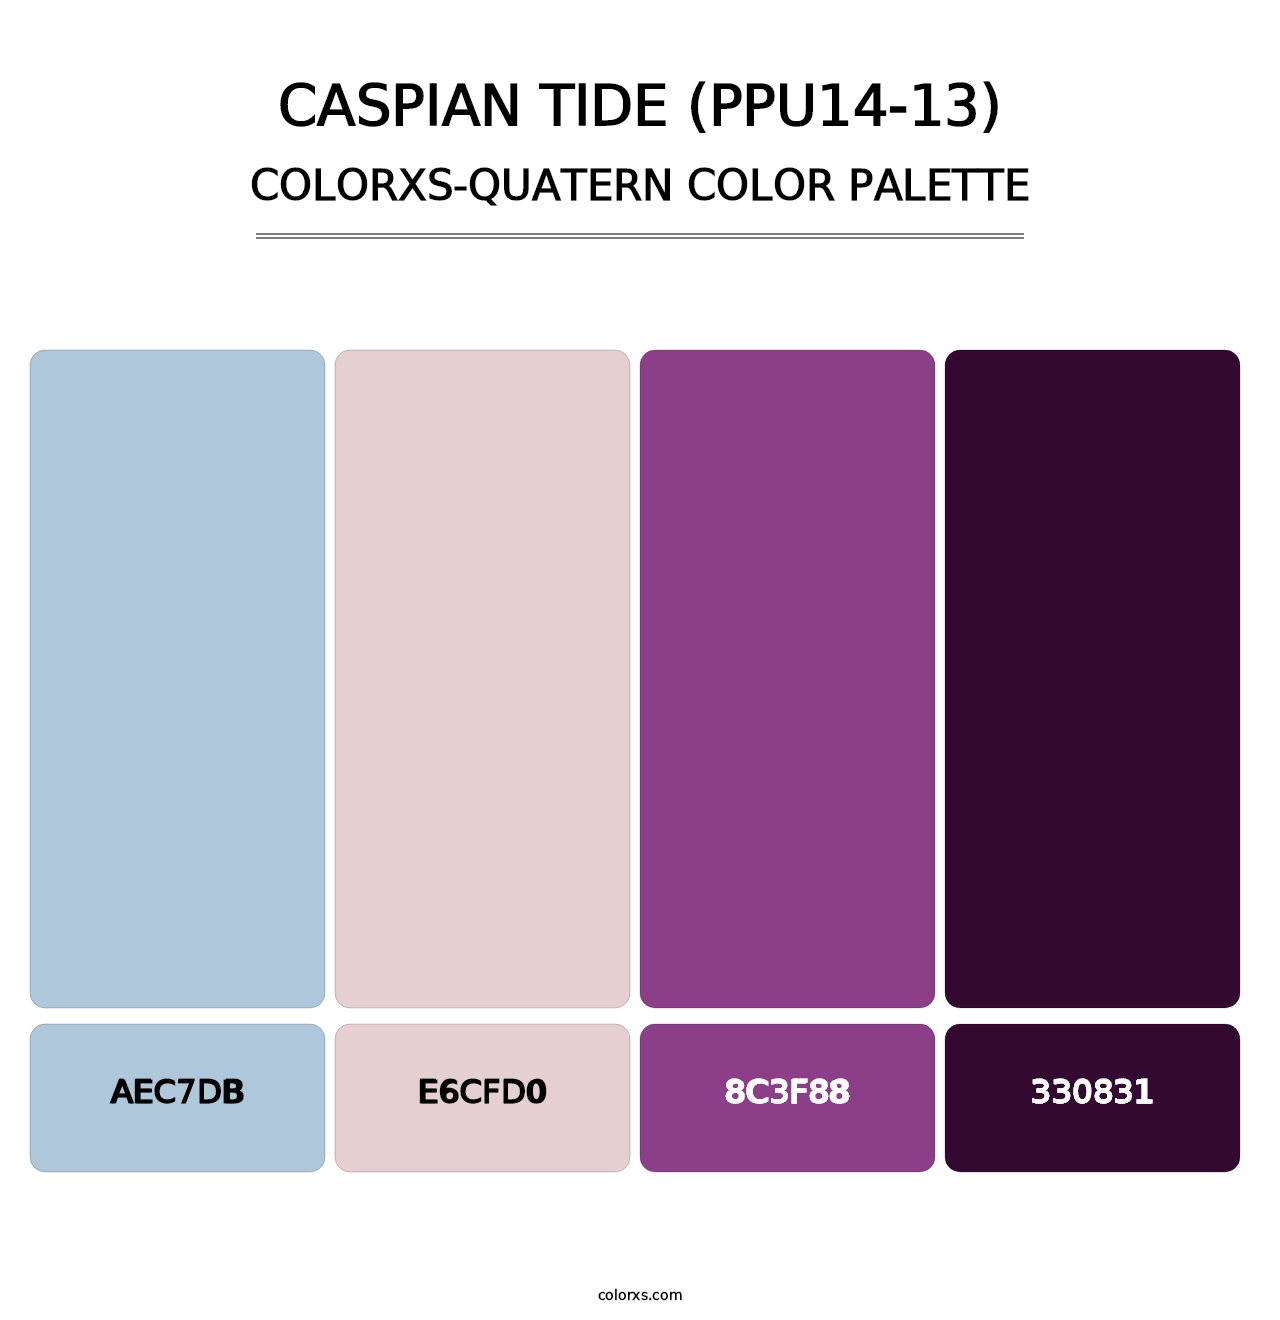 Caspian Tide (PPU14-13) - Colorxs Quatern Palette